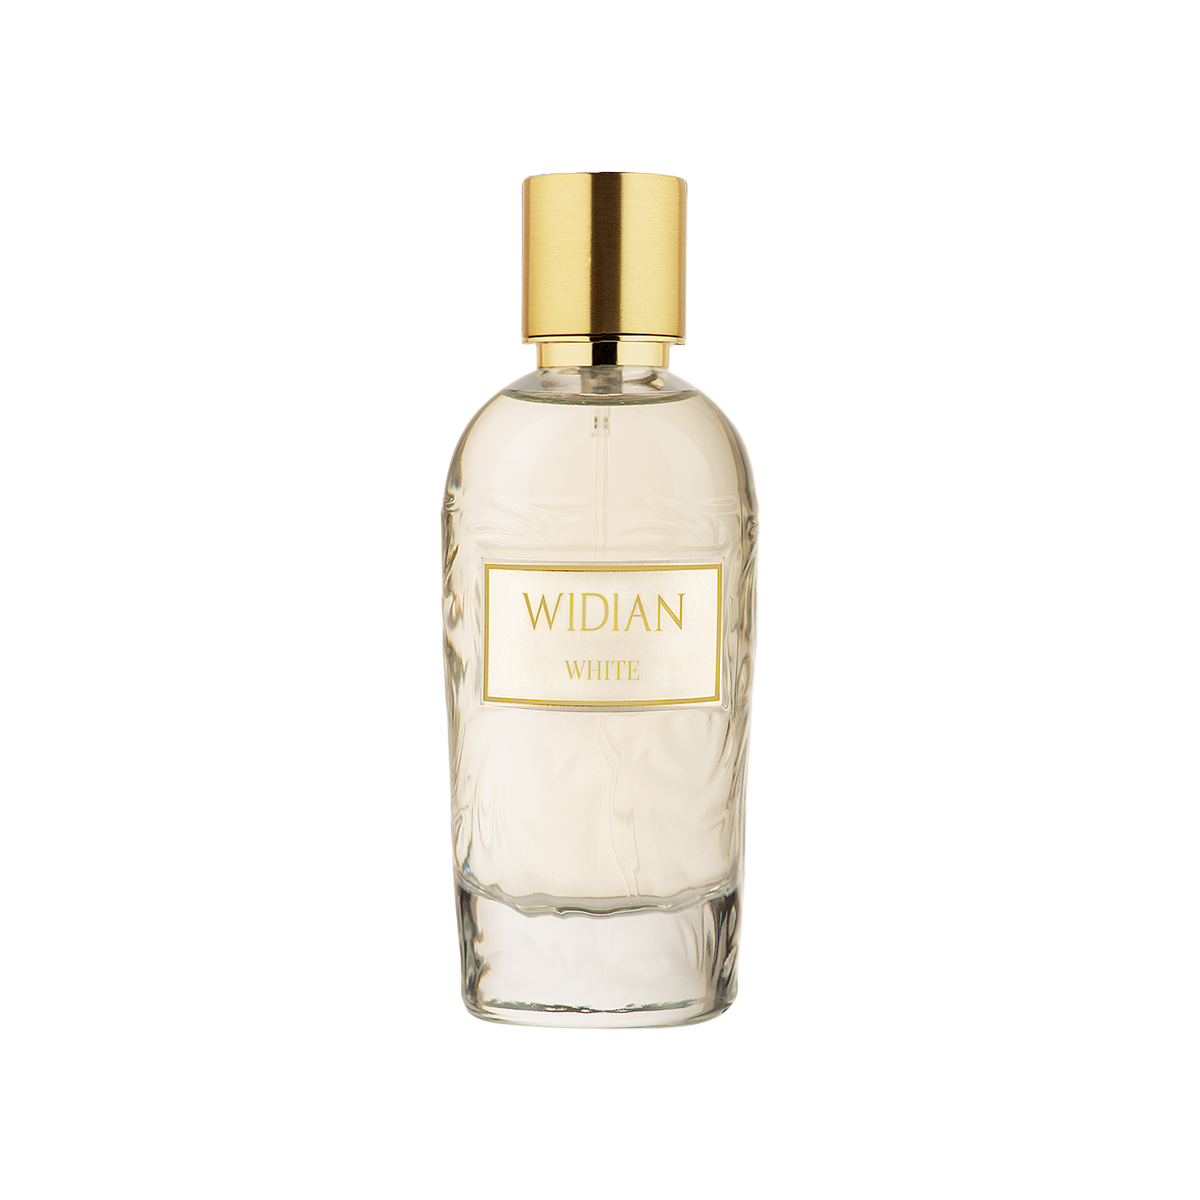 Widian - White Rose Eau de Parfum